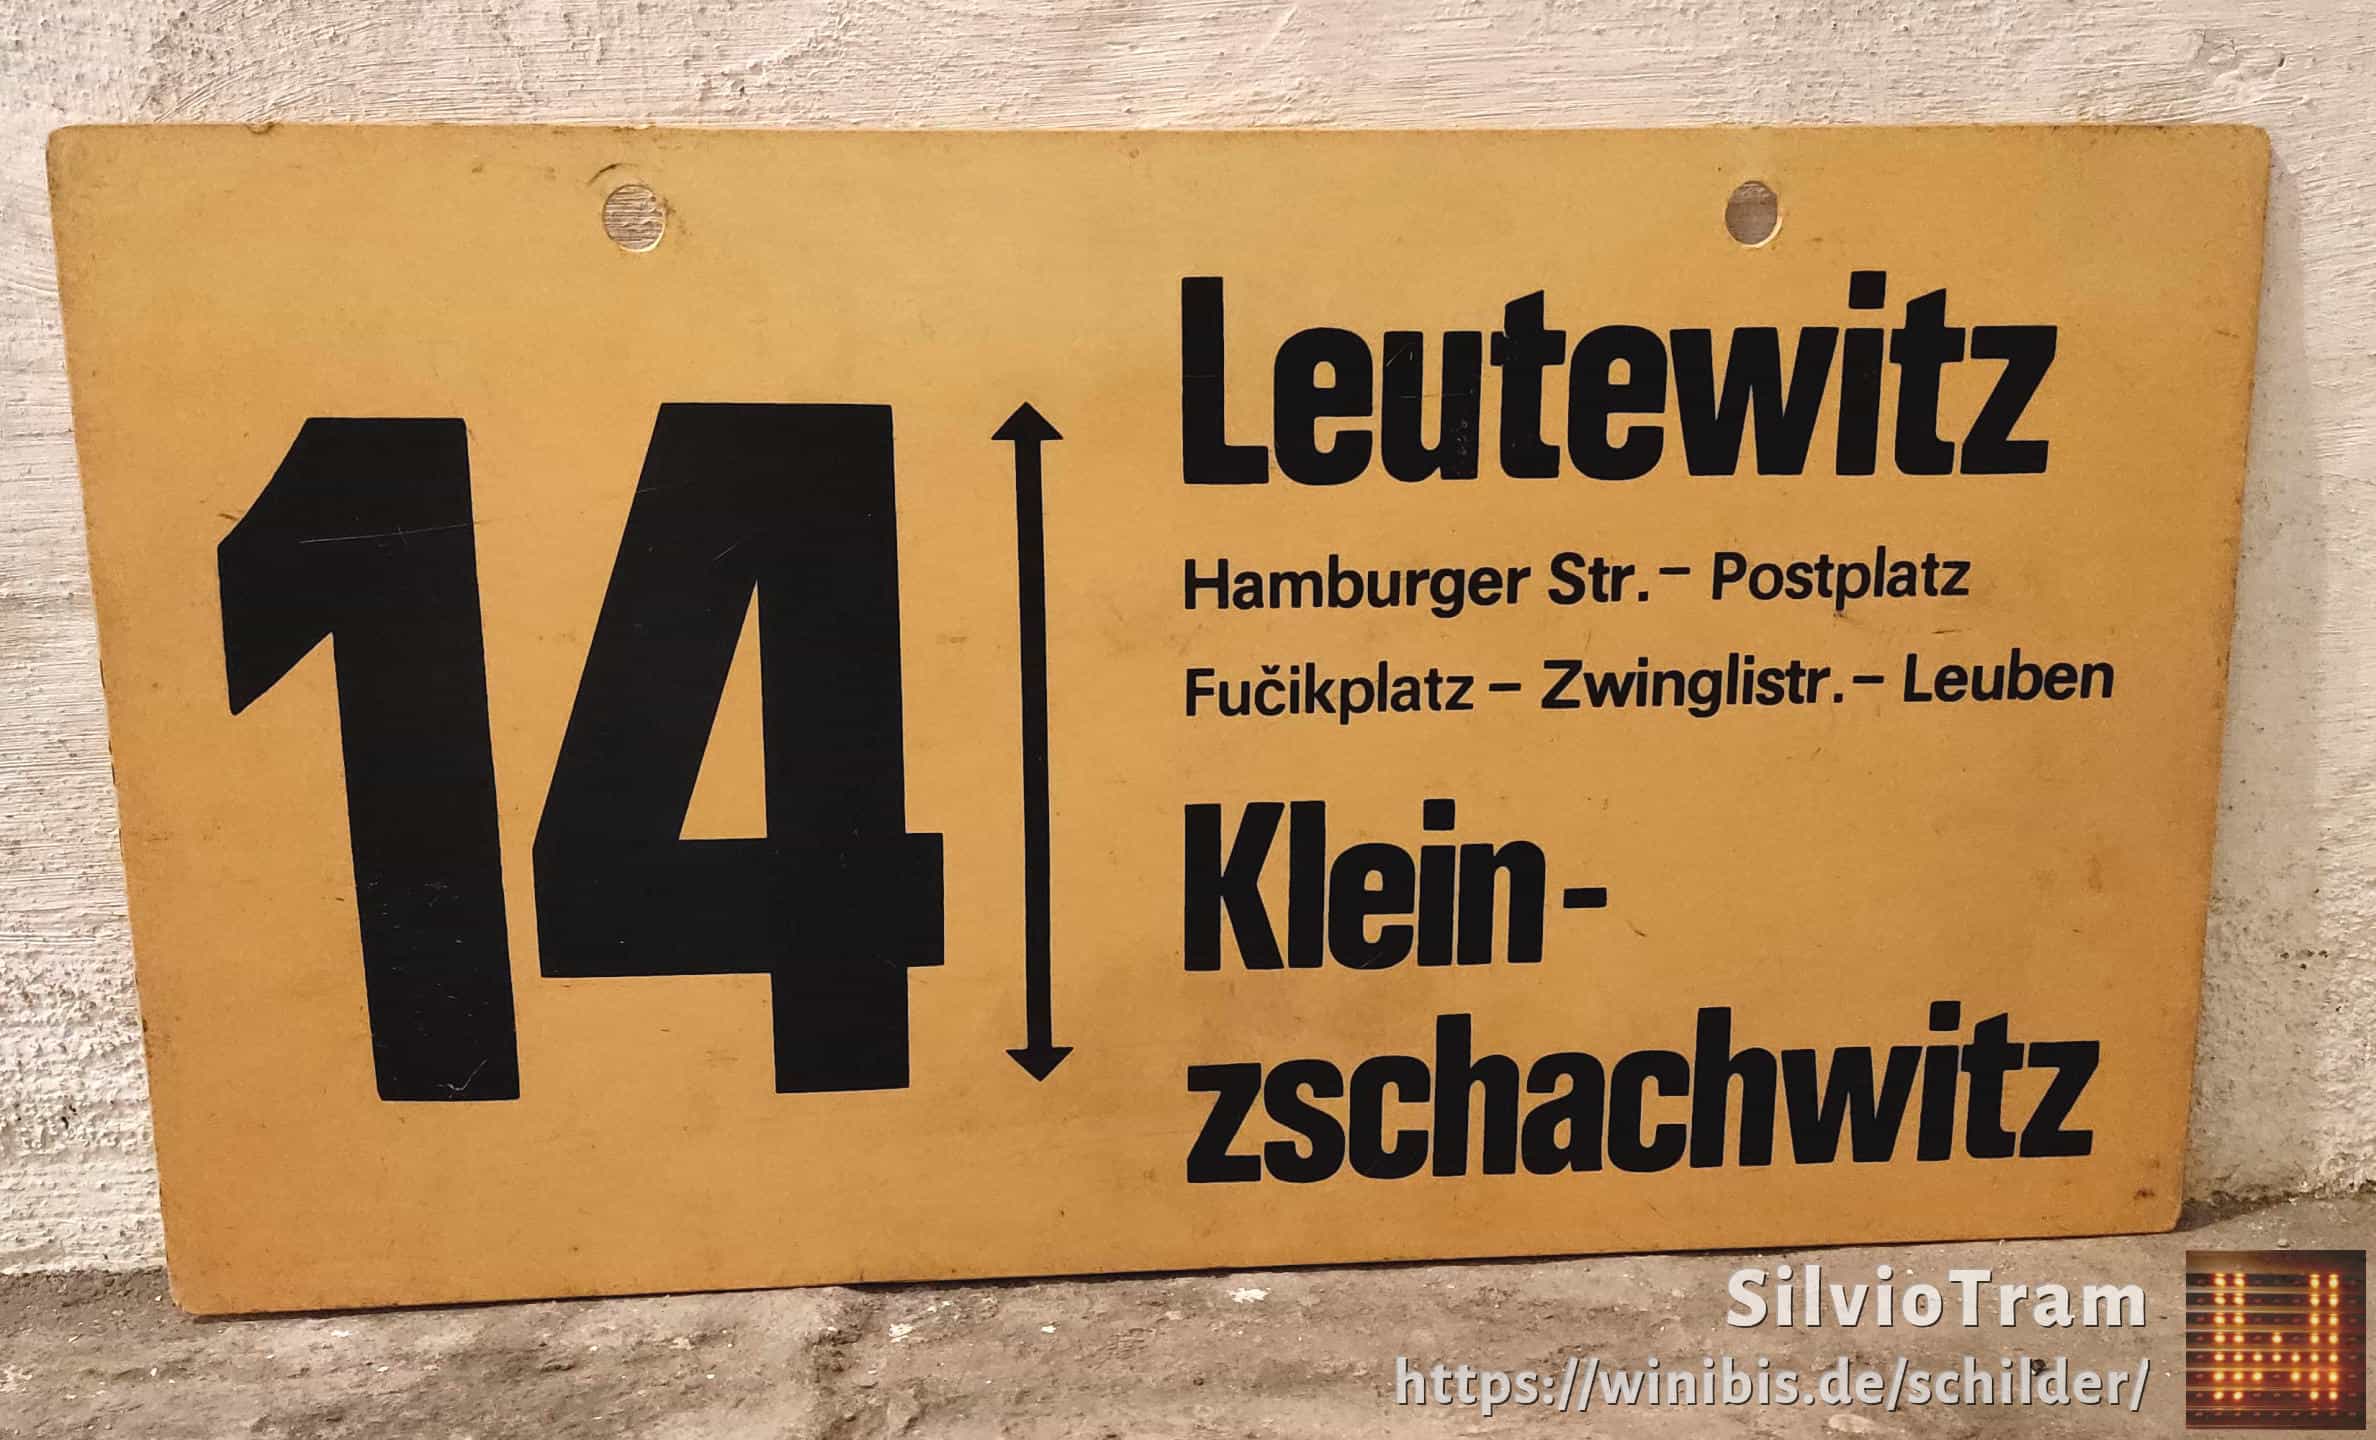 Ein seltenes Straßenbahn-Linienschild aus Dresden der Linie 14 von Leutewitz nach Kleinnach zschachwitz #3